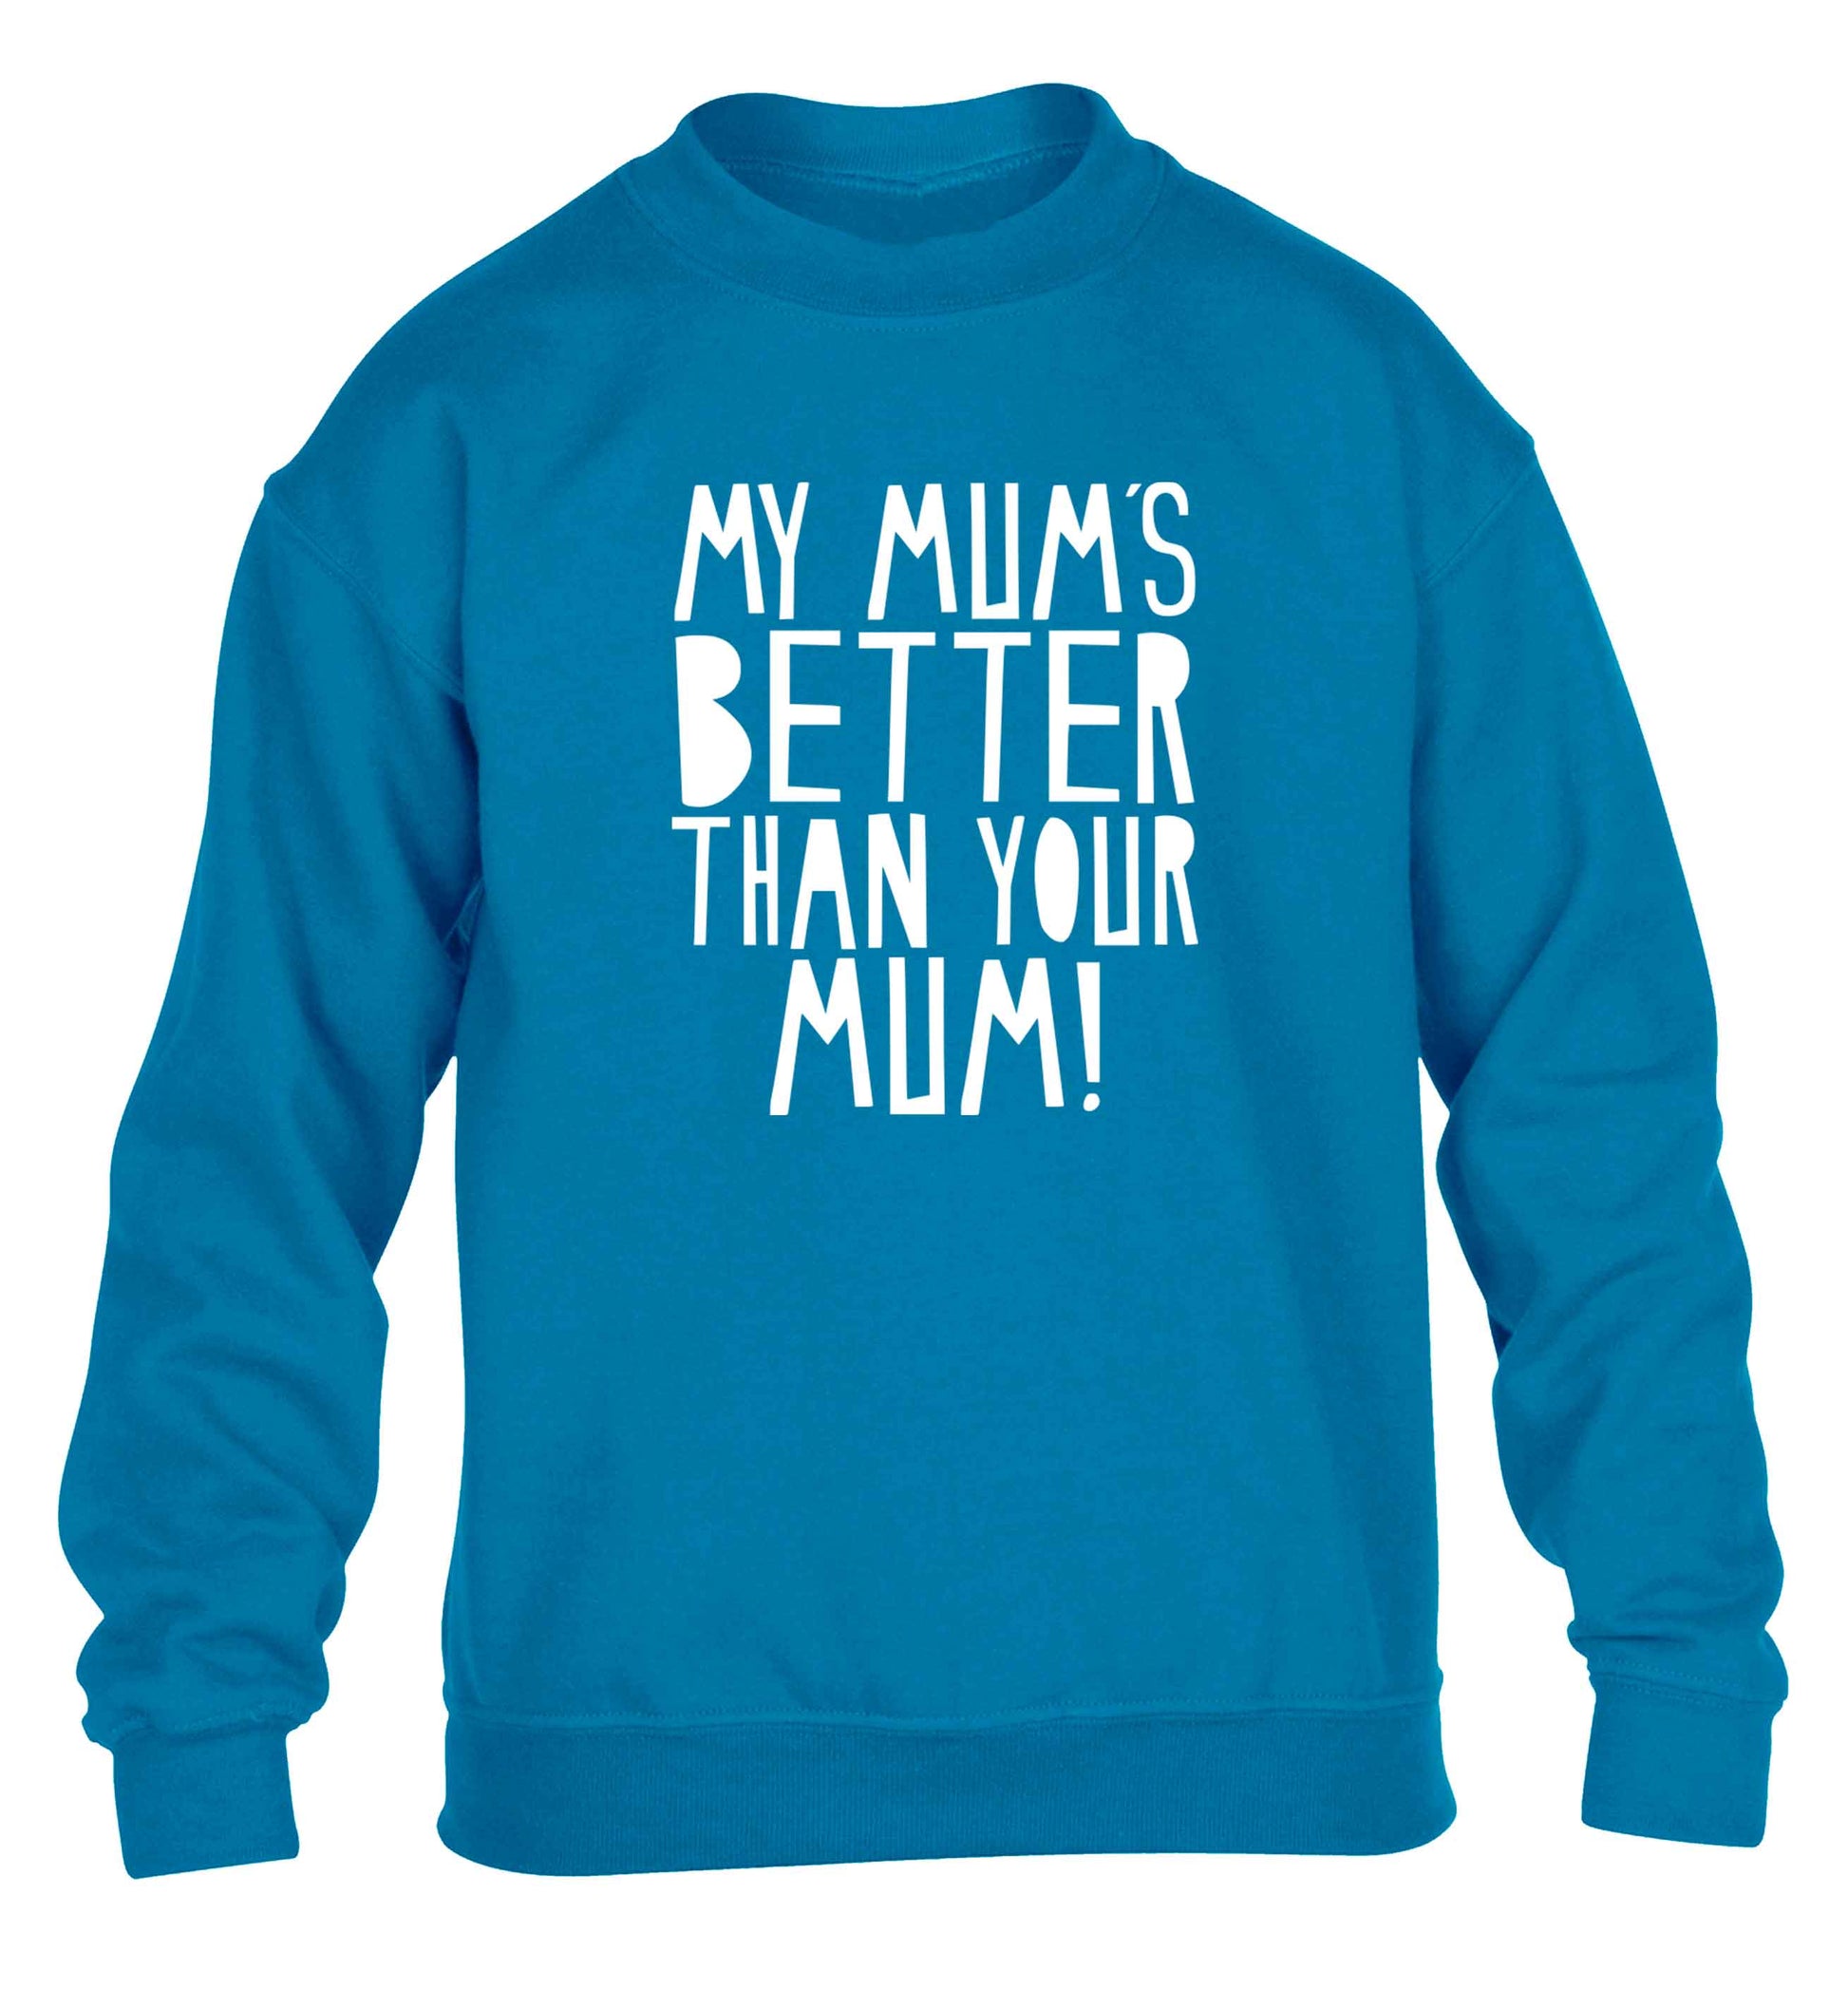 My mum's better than your mum children's blue sweater 12-13 Years